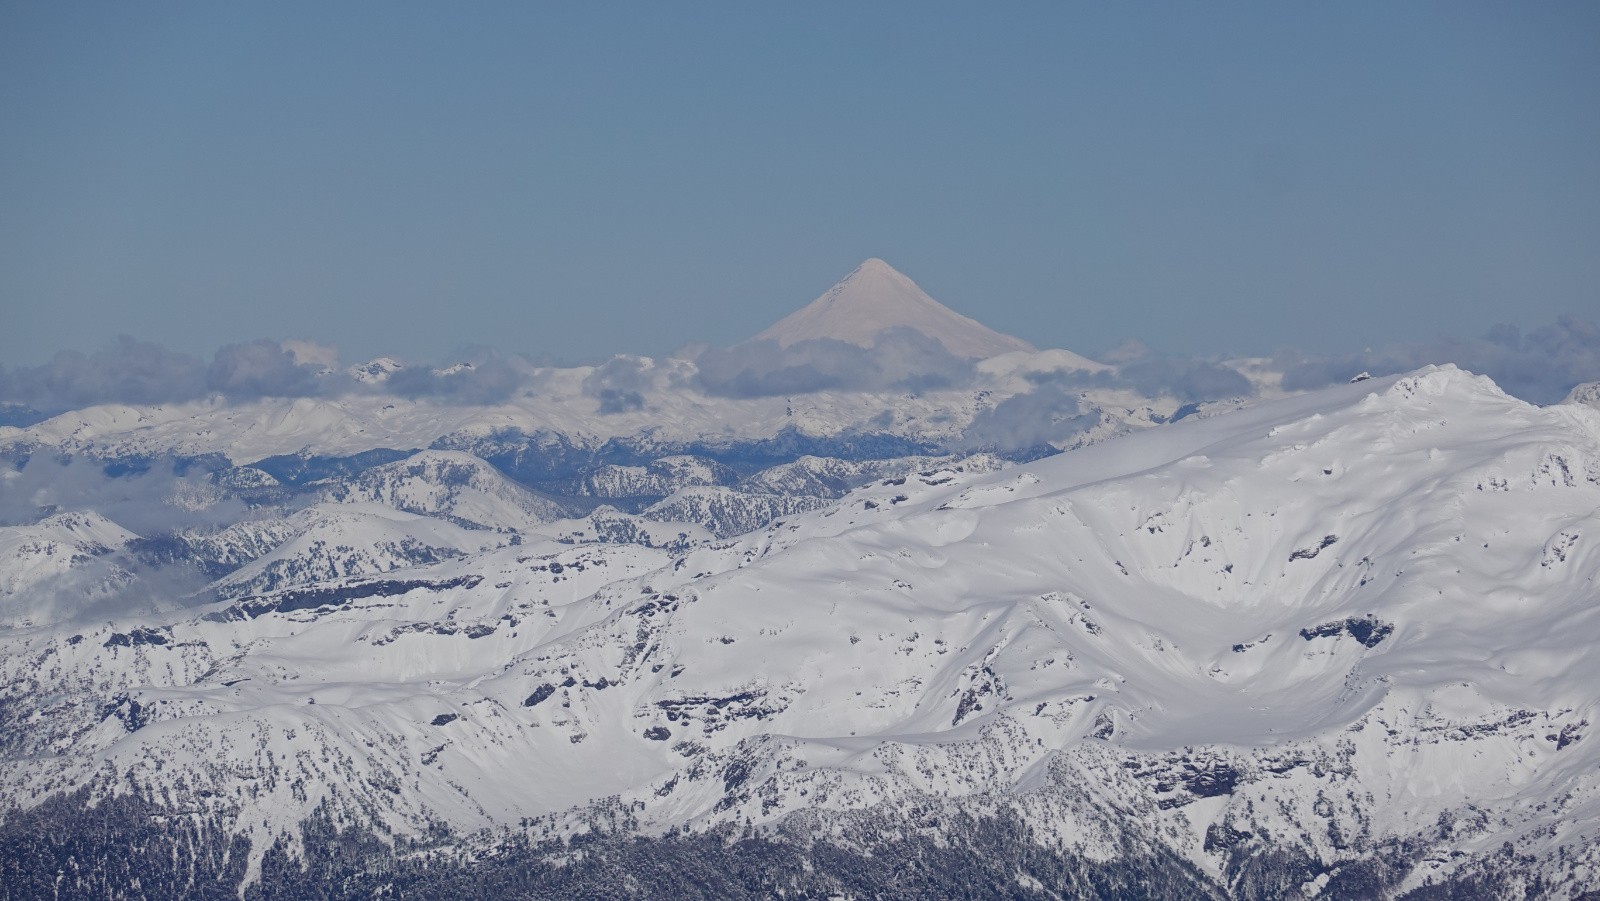 Le volcan Lanin et la Sierra Nevada au premier plan